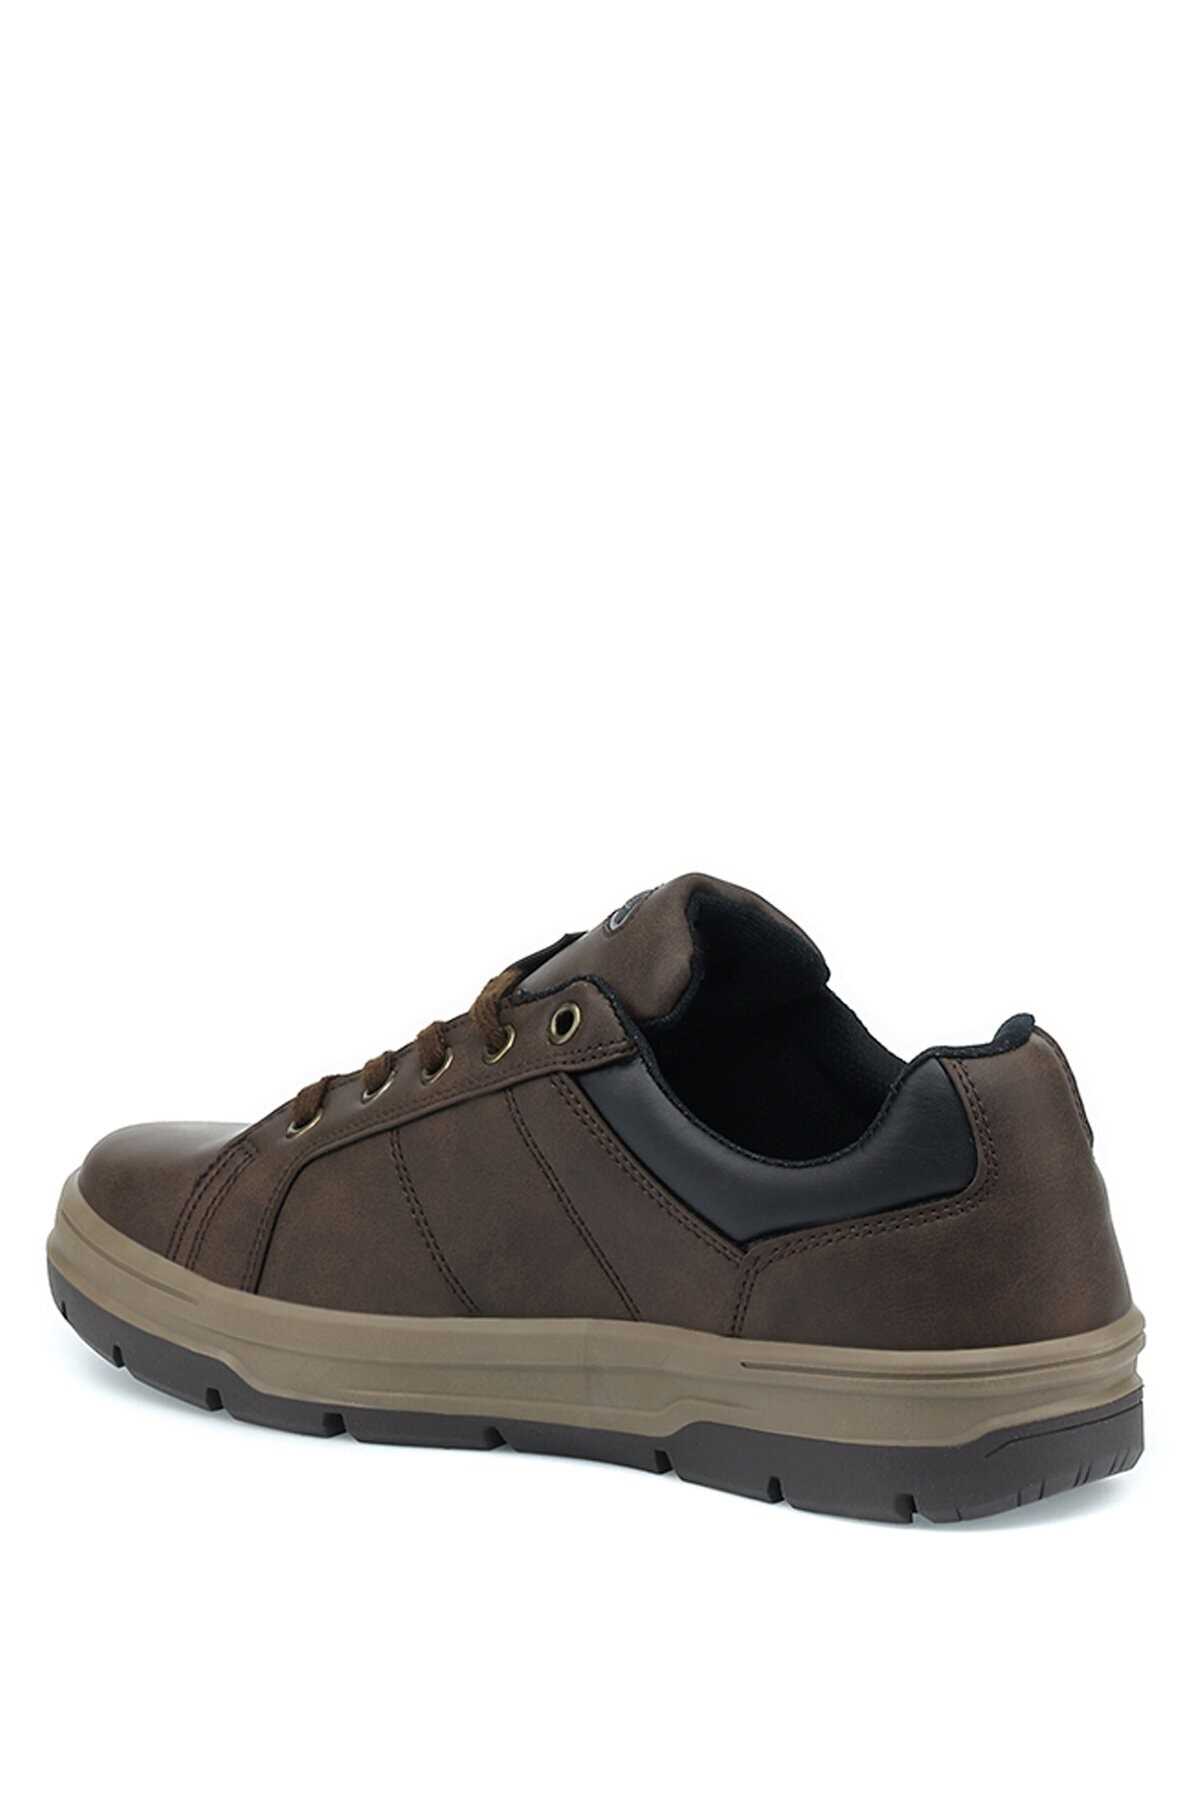 کفش کوهنوردی مردانه ارزان قیمت برند کینتیکس kinetix رنگ قهوه ای کد ty143561118